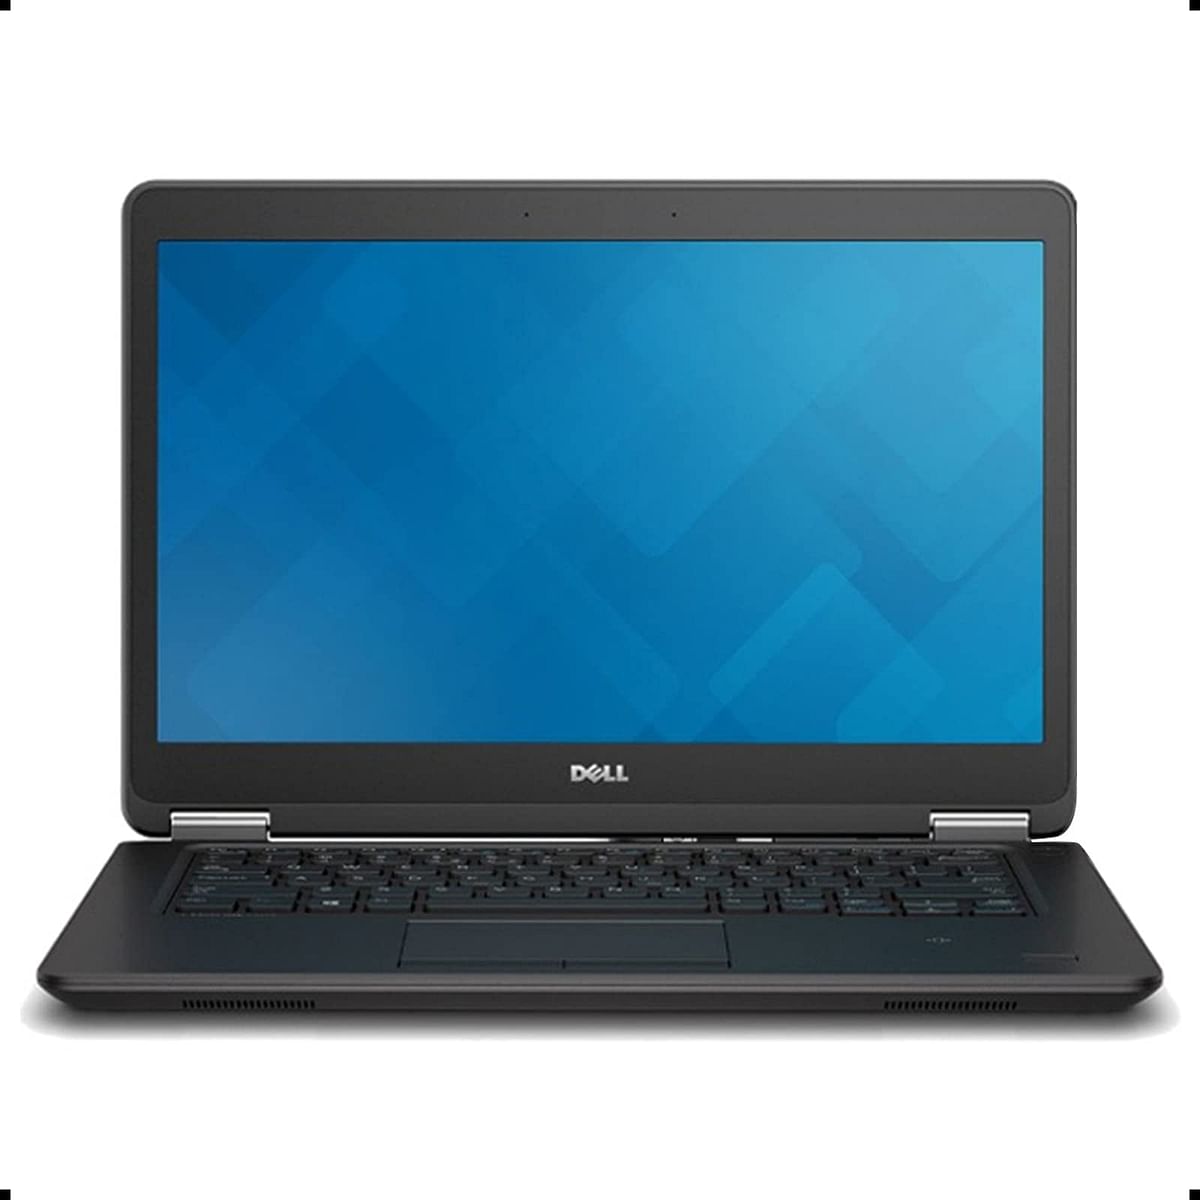 Dell latitude E7450 - 5th Gen Core i5 -8GB Ram-256GB SSD-14'' FHD Display-HDMi-USB 3.0-Ethernet Port-Win 10 pro Licensed-Black